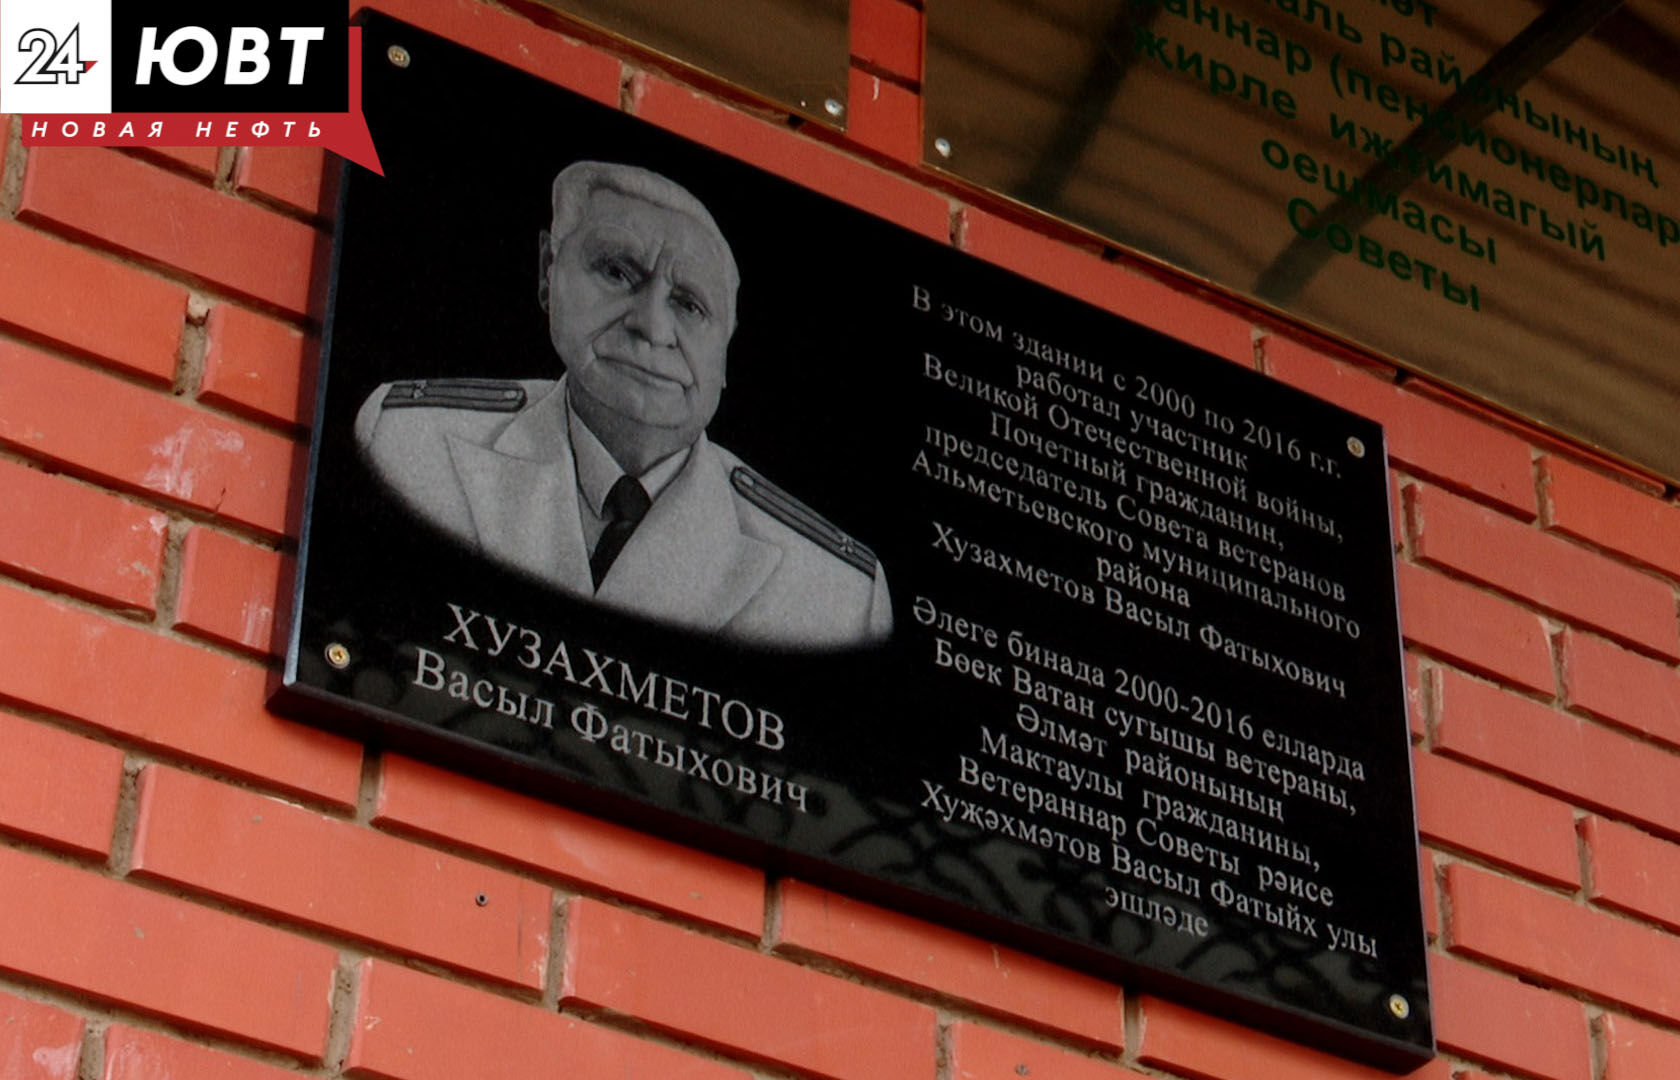 В Альметьевске в День памяти и скорби открыли мемориальную доску участнику ВОВ Васылу Хузахметову